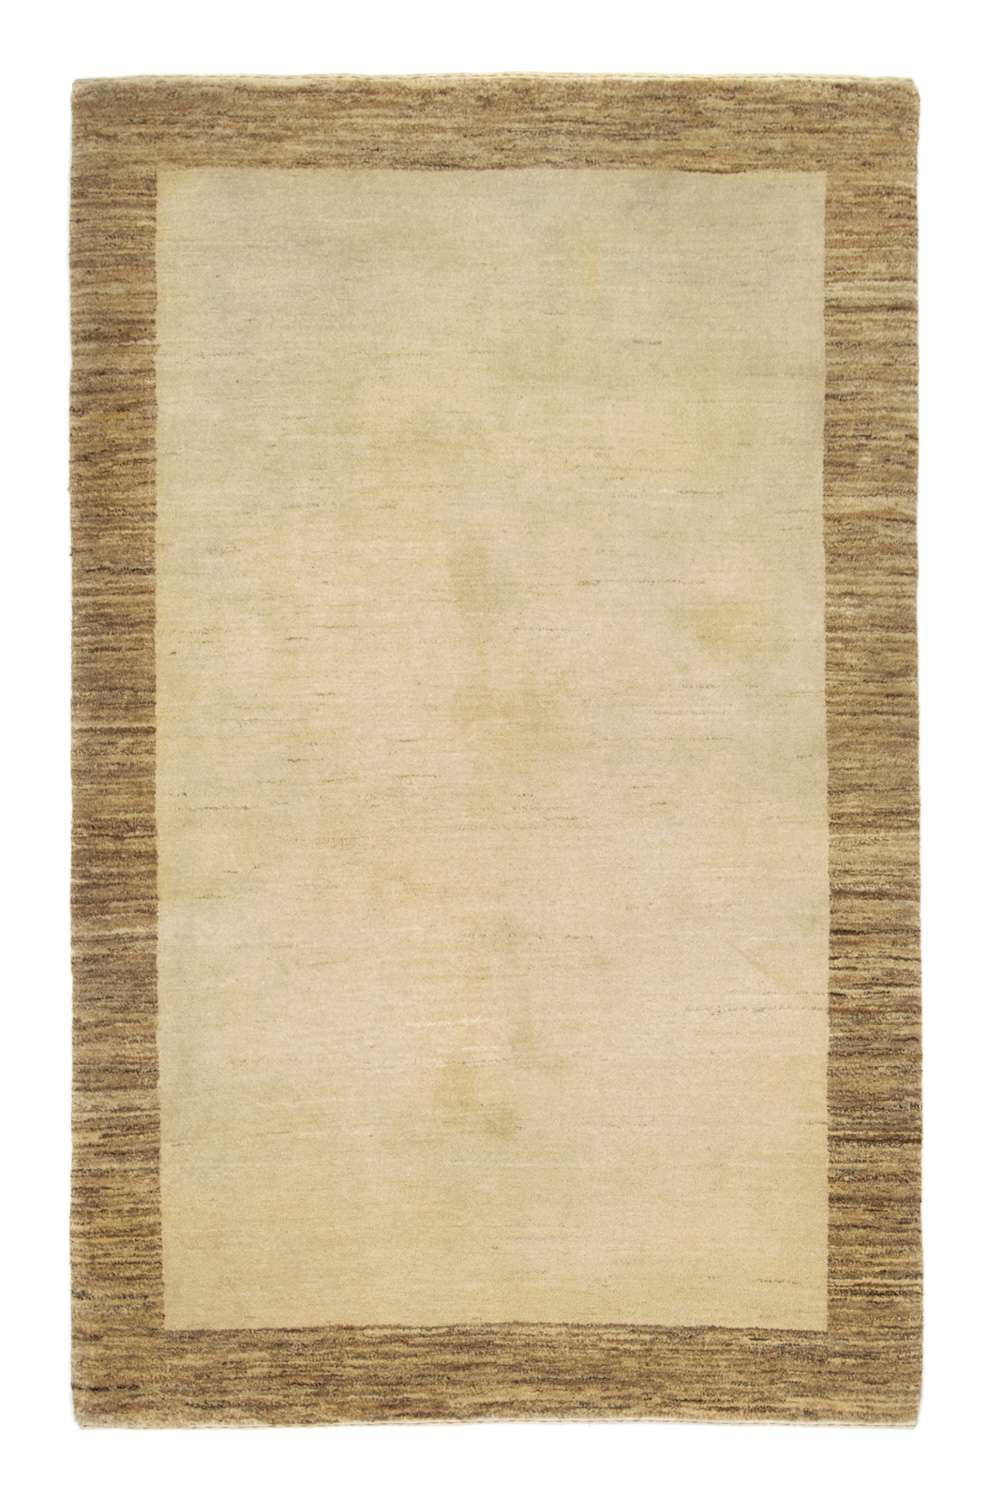 Gabbeh-tæppe - Indus - 188 x 124 cm - beige